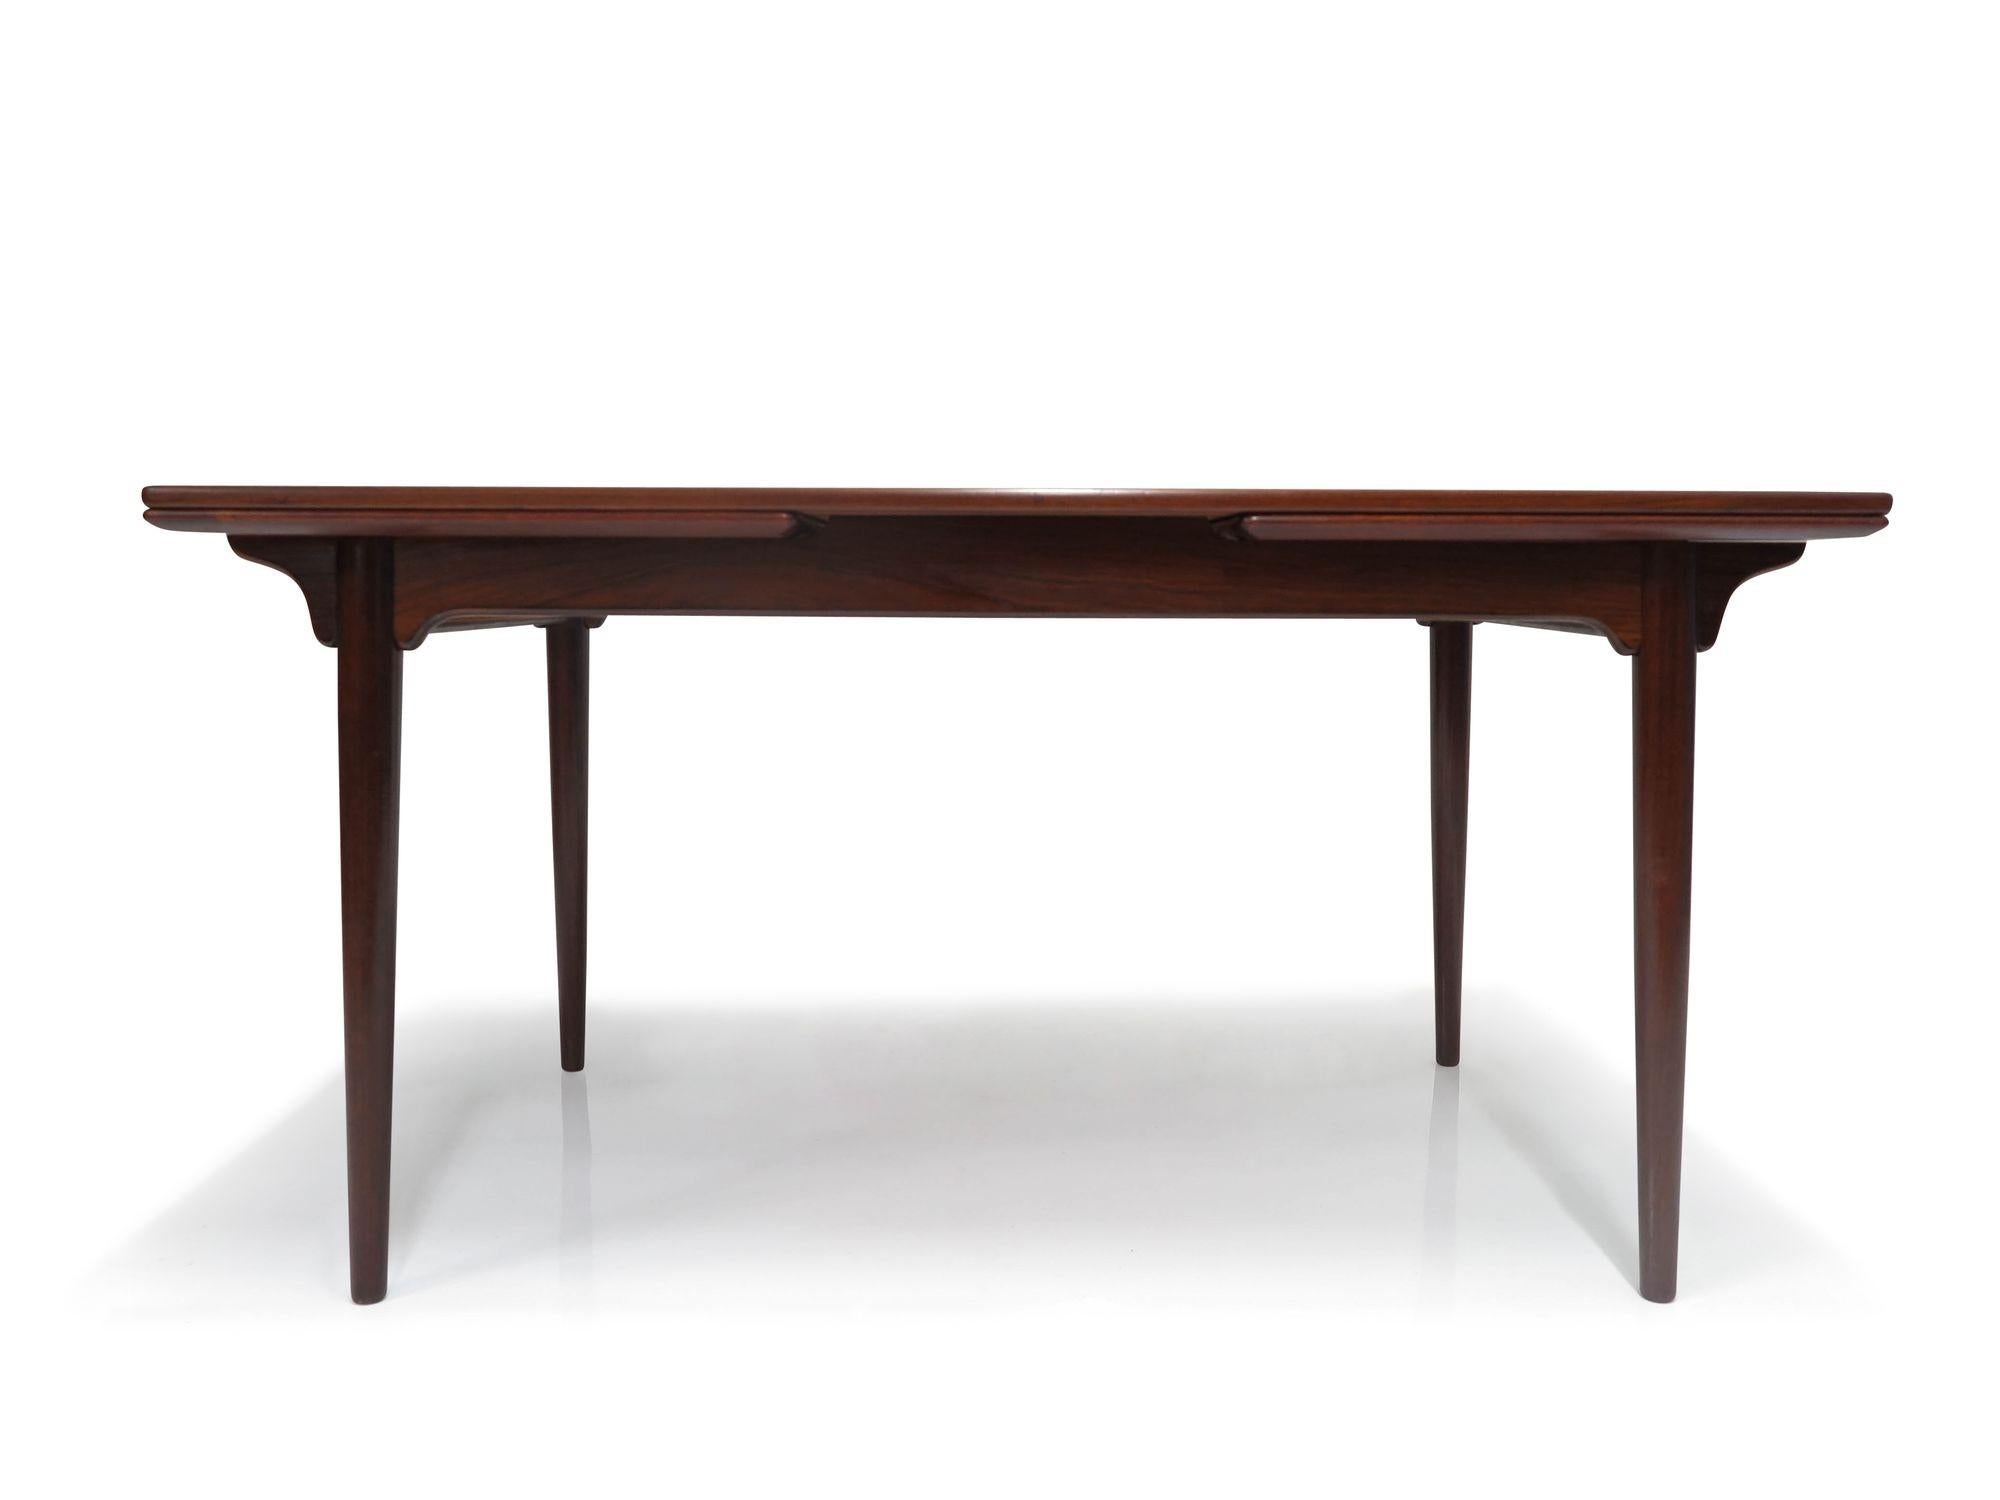 Dänischer Palisander-Esstisch, entworfen von Gunni Omann für Omann Jun Mobelfabrik, um 1960, Dänemark, Modell 54. Dieser Tisch besticht durch die schöne, buchstabierte Maserung der Tischplatte, die von massivem Palisander eingefasst ist. In